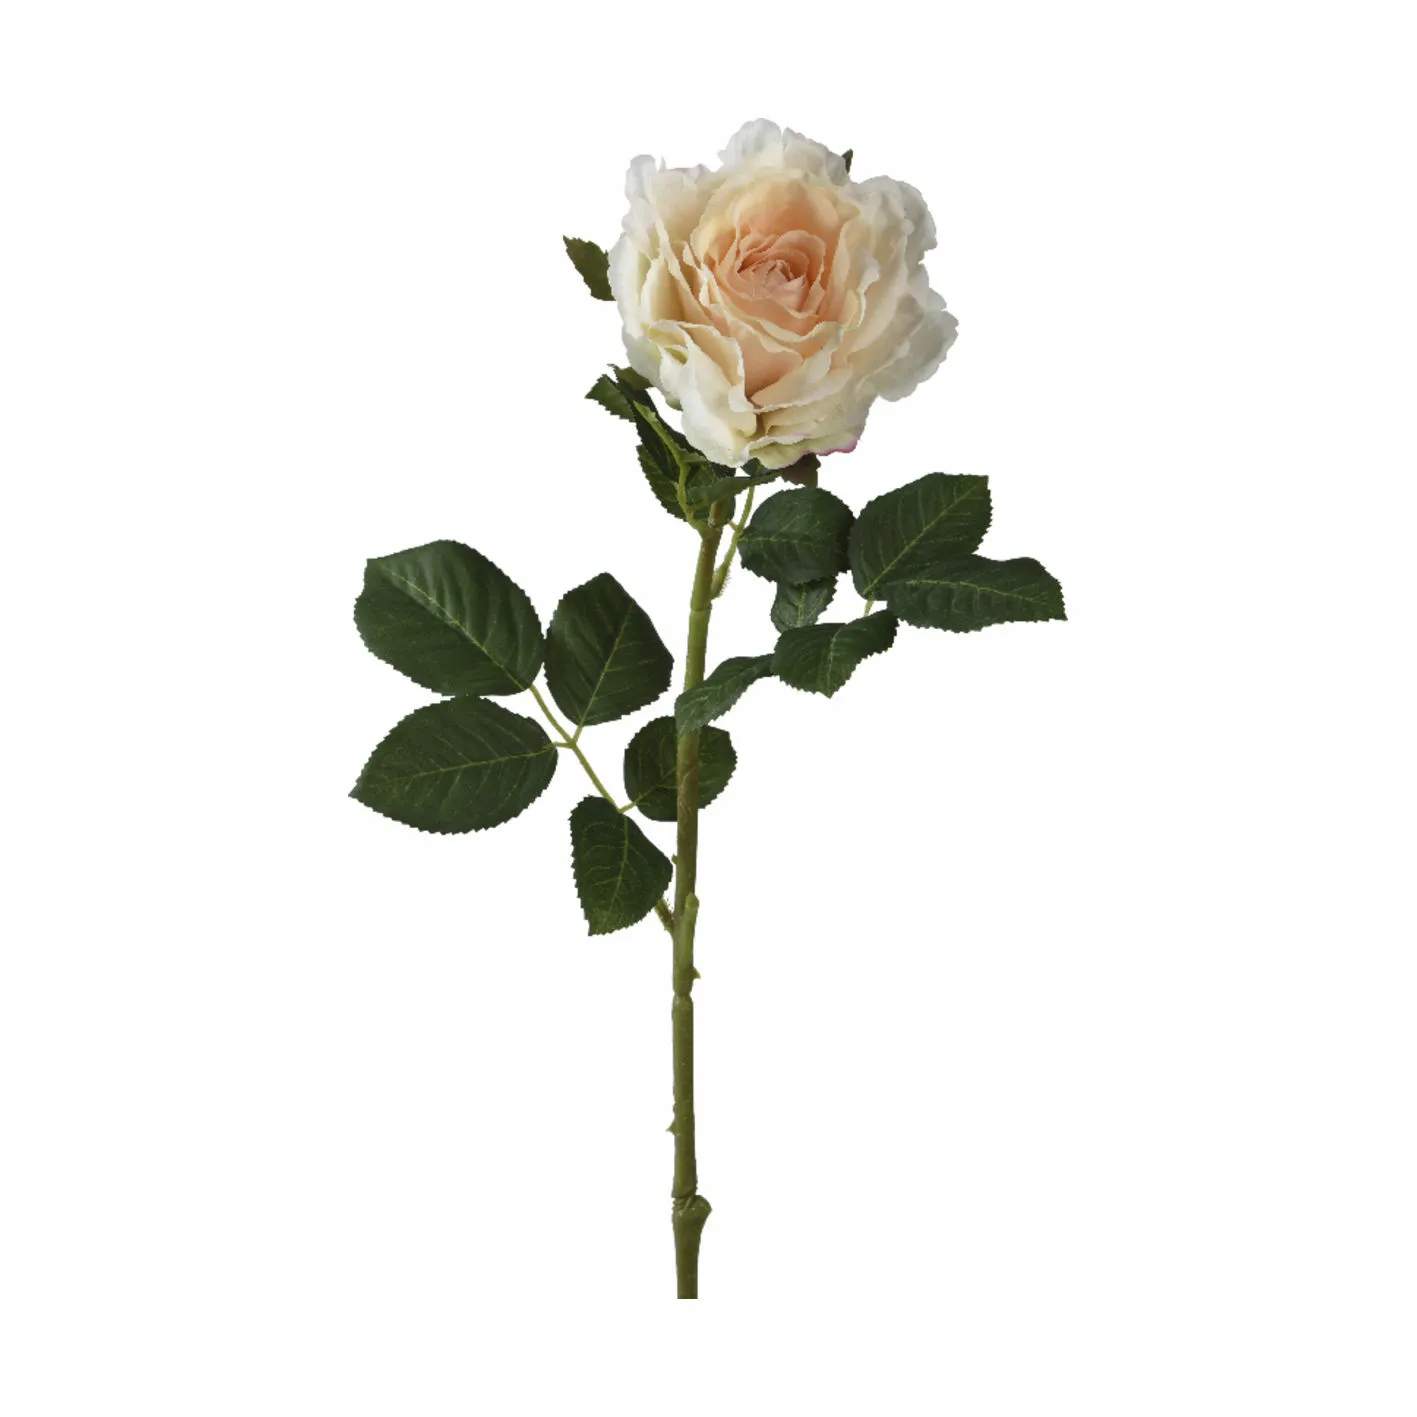 Kunstig Blomst - Rose, fersken, large